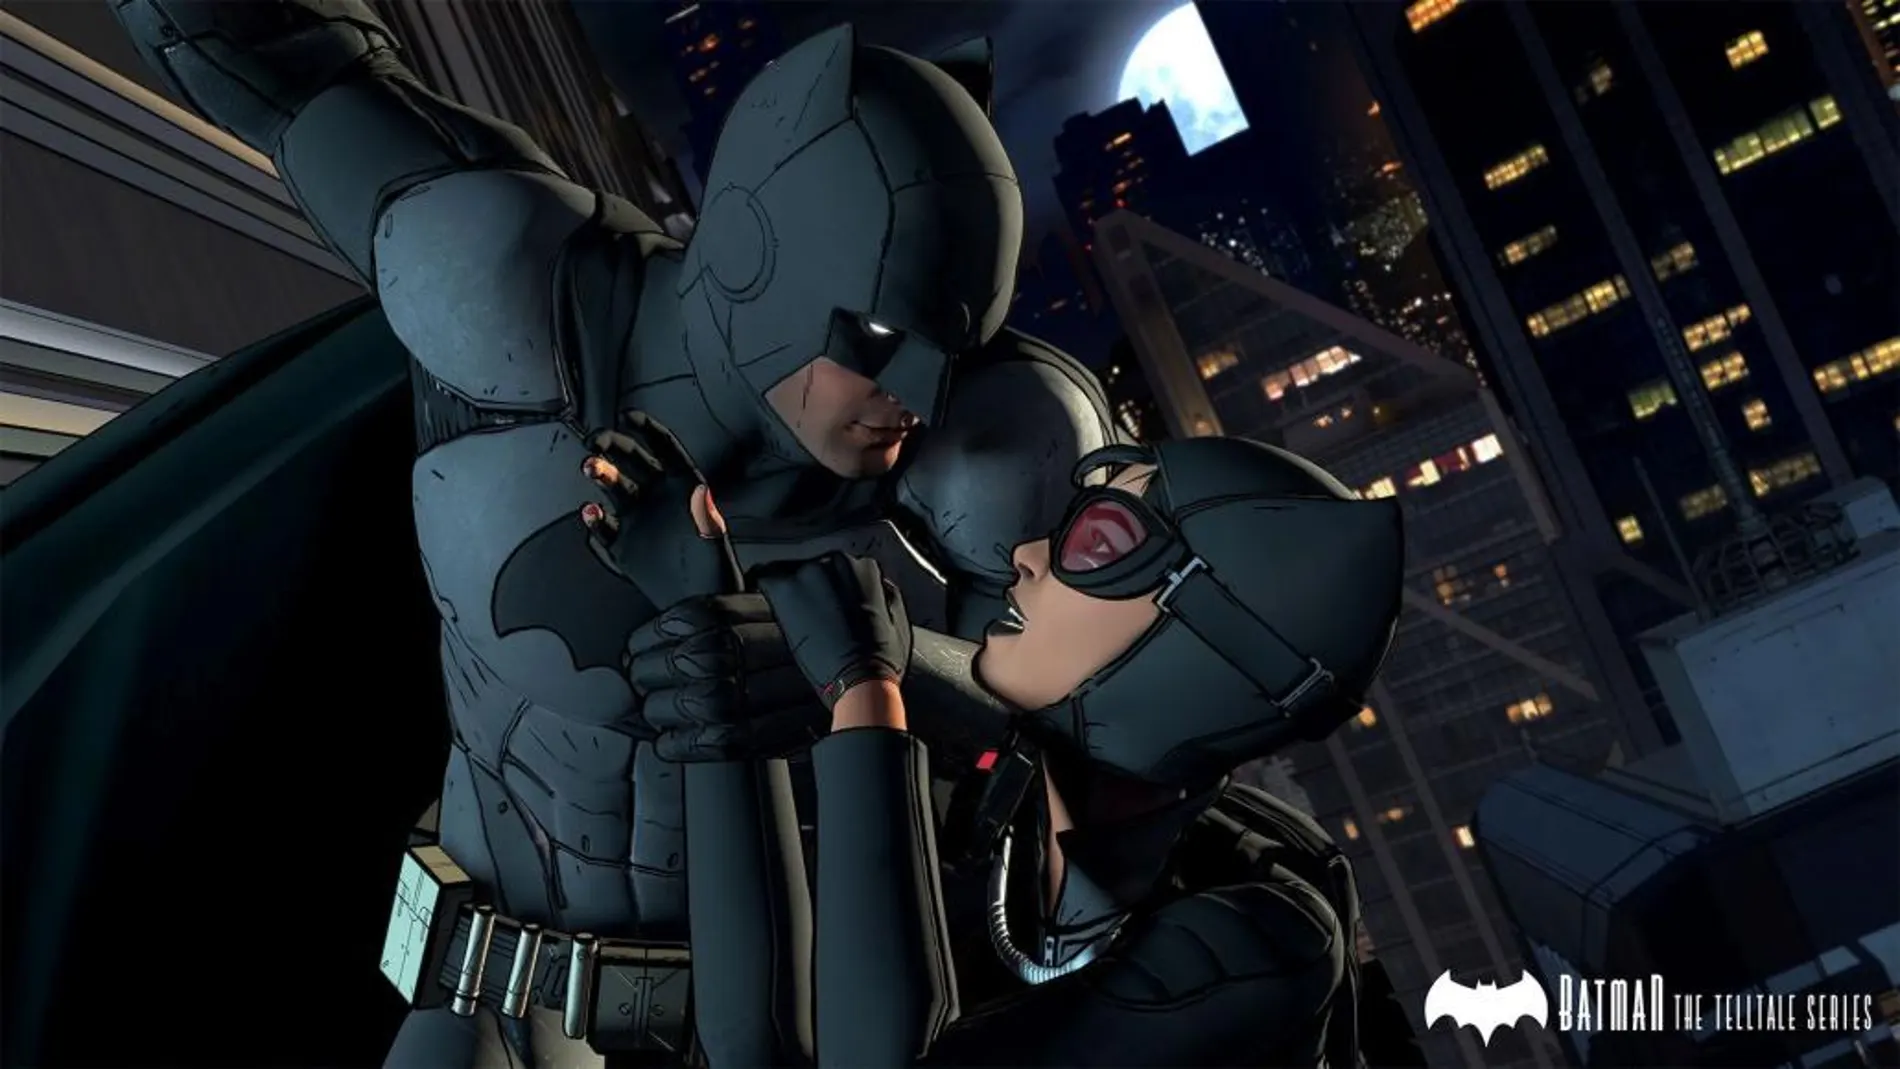 Warner Bros. anuncia fechas para el lanzamiento digital y físico de Batman The Telltale Series